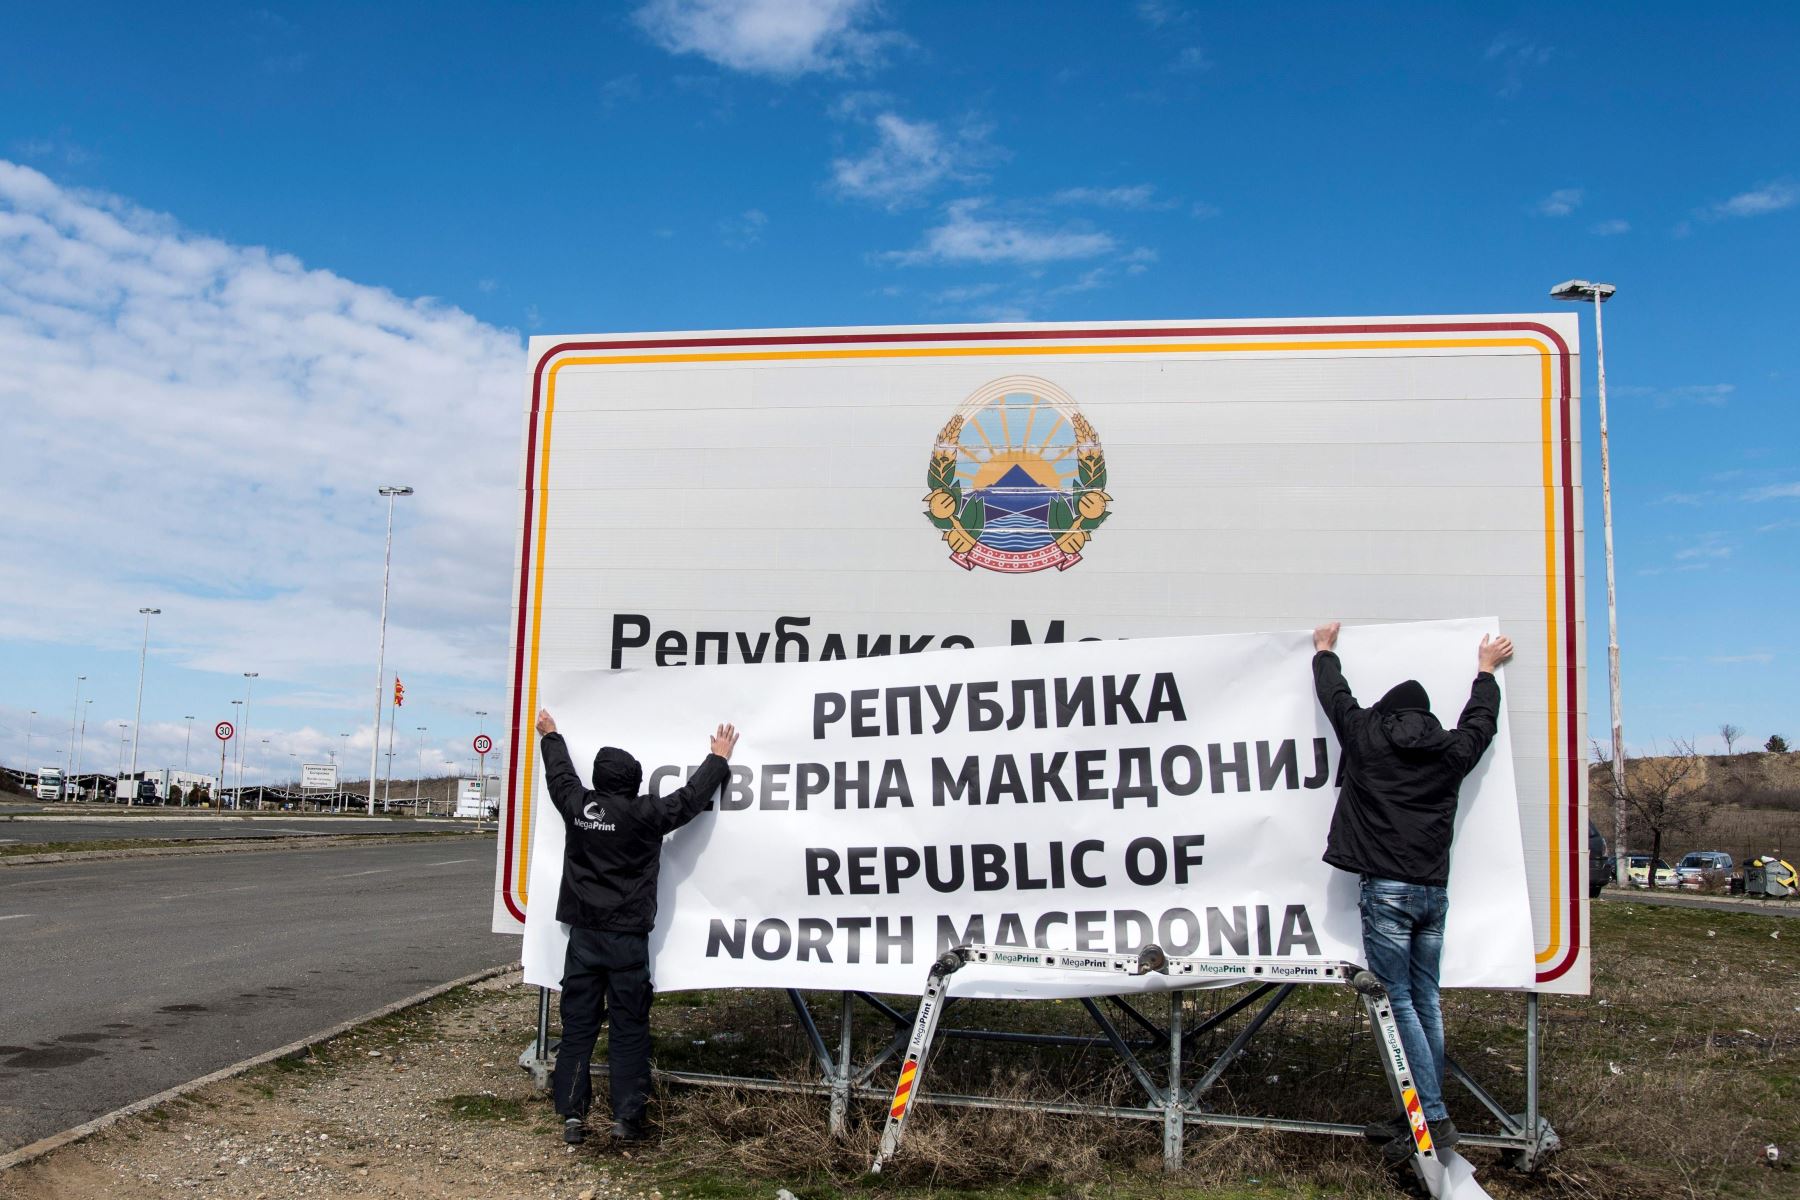 La ONU fue notificada del nuevo nombre de Macedonia del Norte